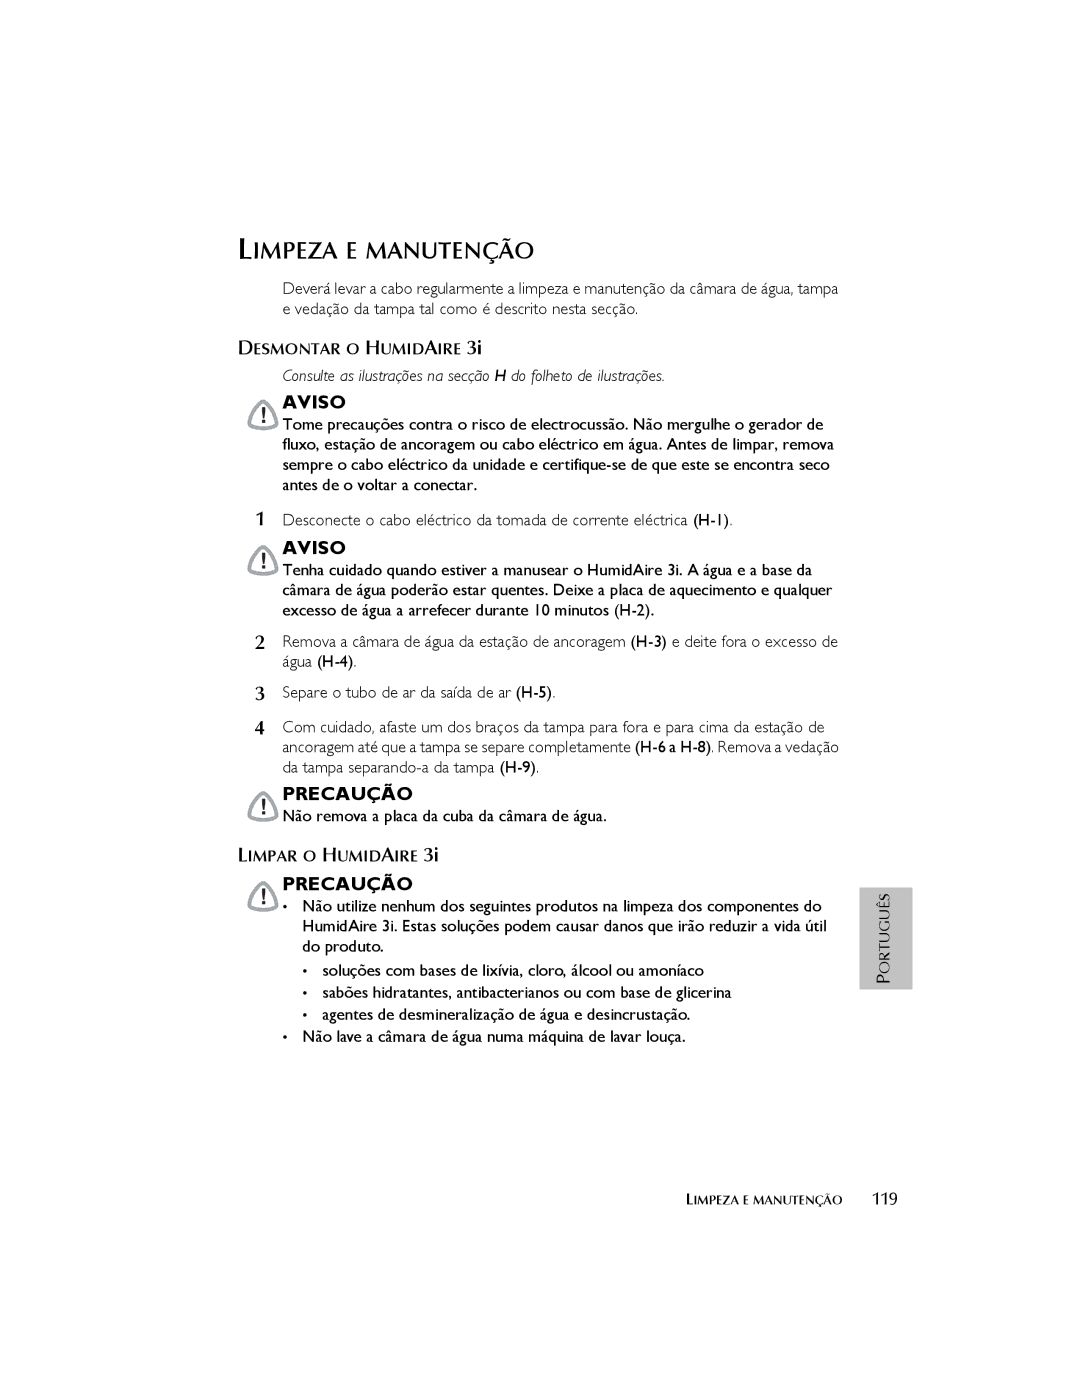 ResMed 3I user manual Limpeza E Manutenção, Desmontar O Humidaire, Limpar O Humidaire 